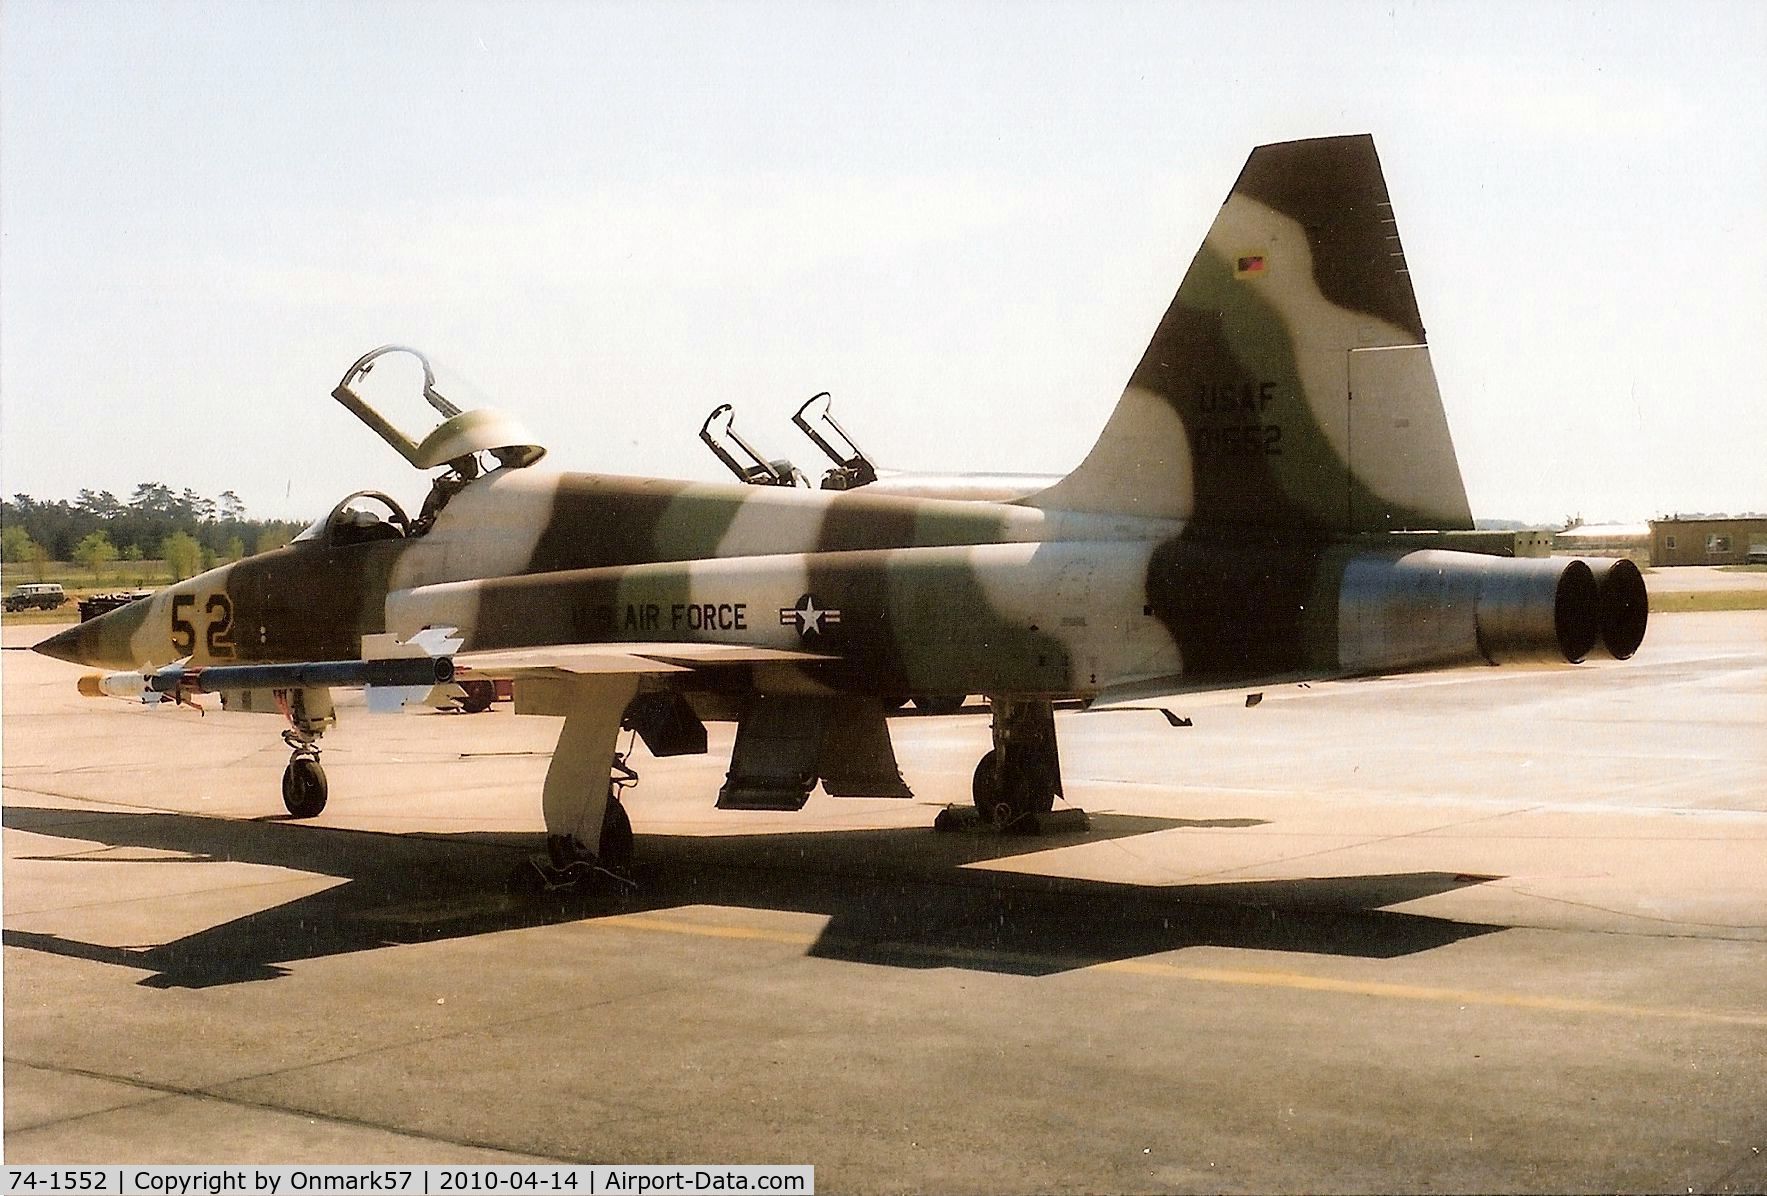 74-1552, 1974 Northrop F-5E Tiger II C/N R.1210, F-5 Freedom Fighter from RAF Alconbury at RAF Lakenheath, Summer 1977.